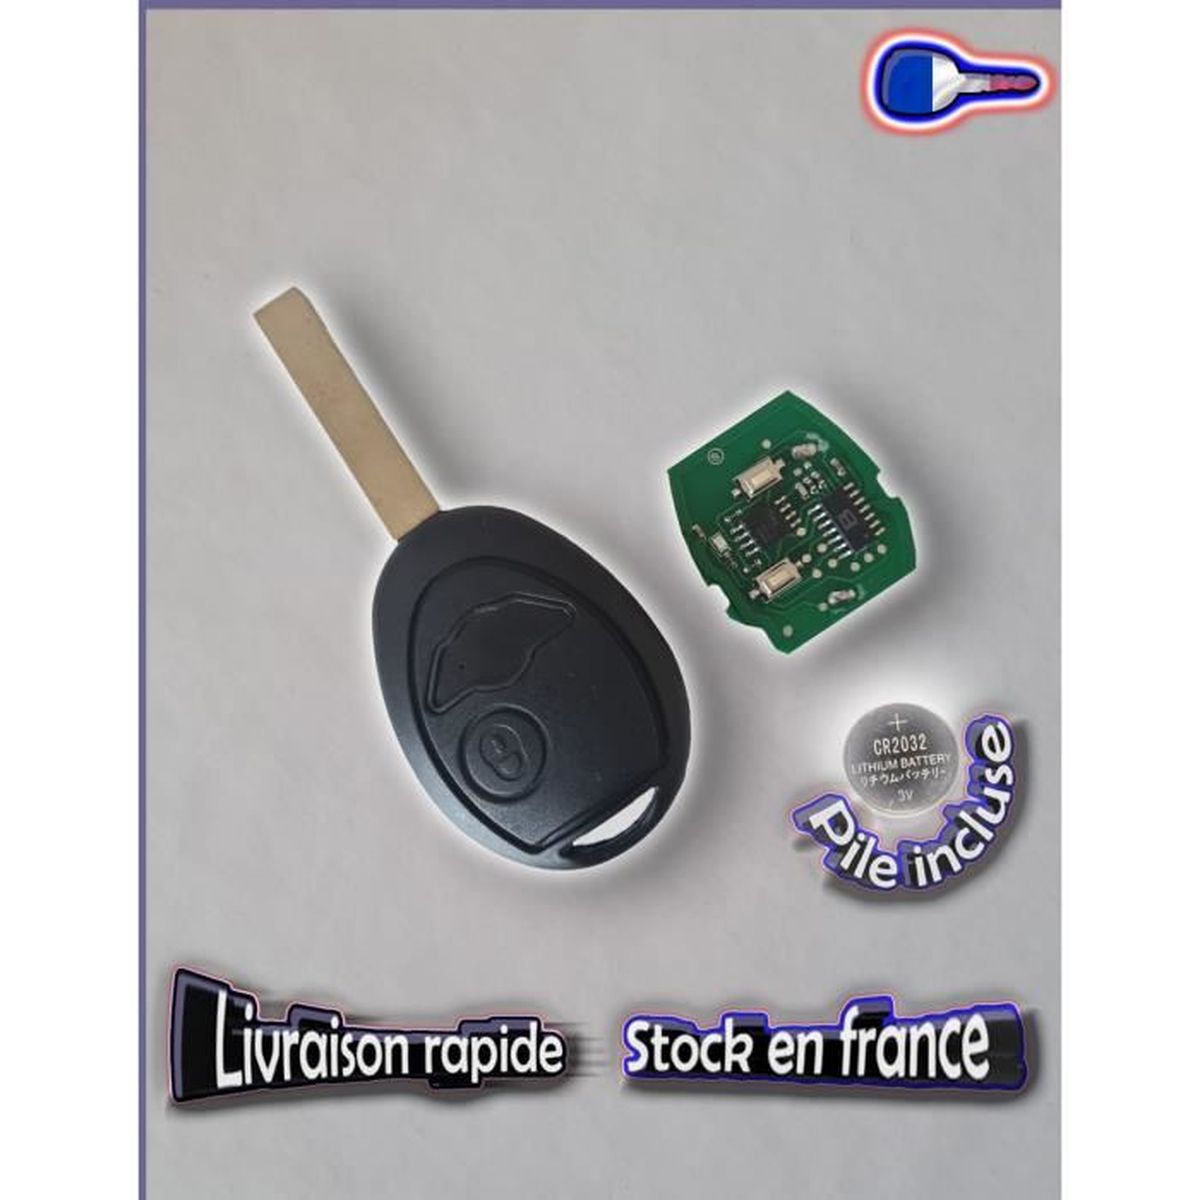 Coque de protection en silicone pour voiture MINI clé télécommande MC, 4,70  €